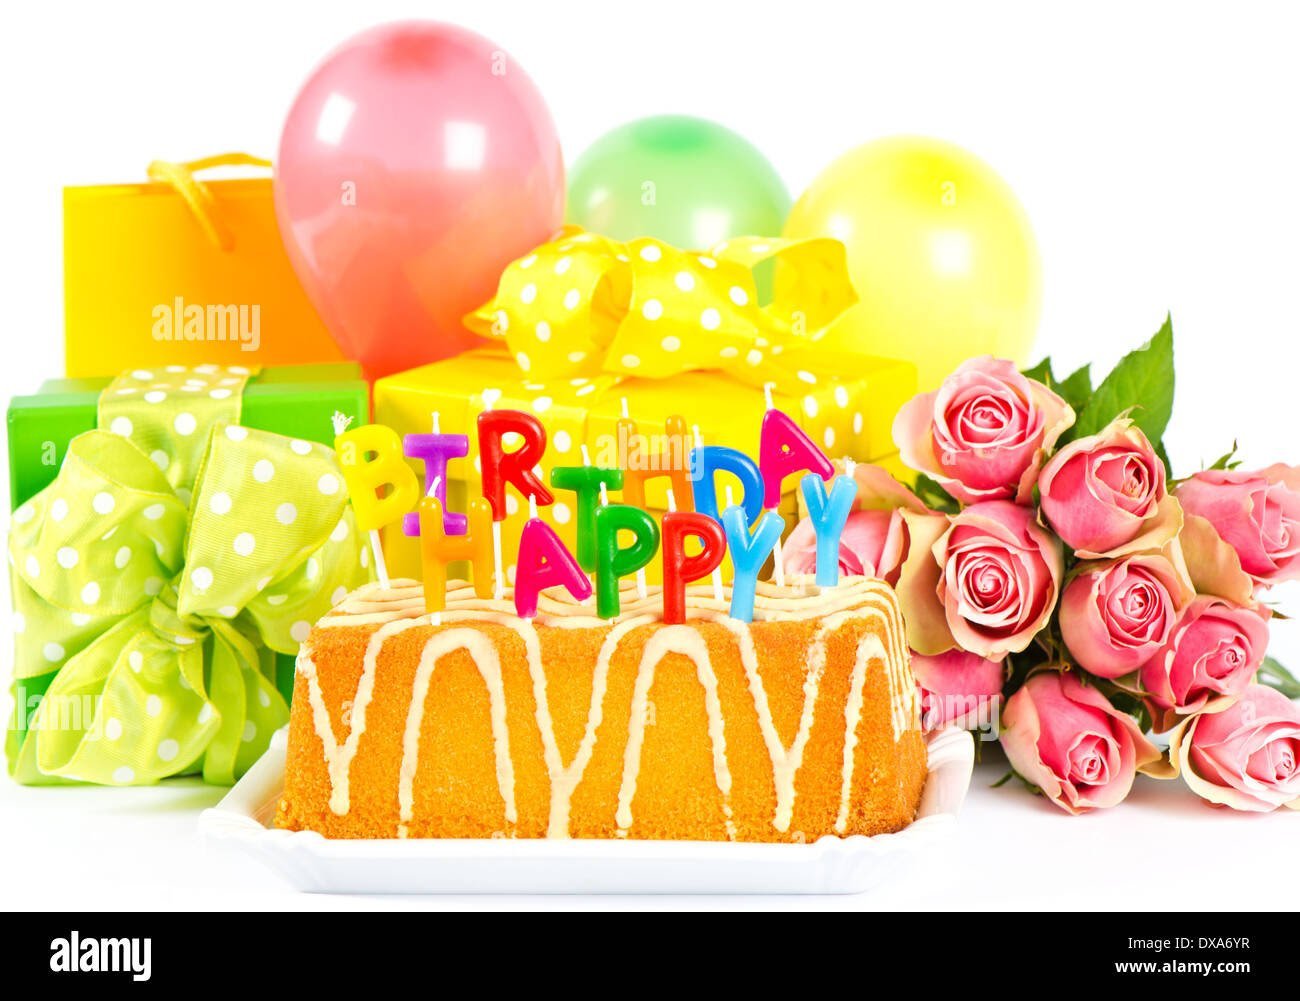 Открытки с днем рождения женщине с шарами. Открытка с днём рождения торт. Торт шарики цветы. Красивые шары на день рождения. Торт подарок на день рождения.